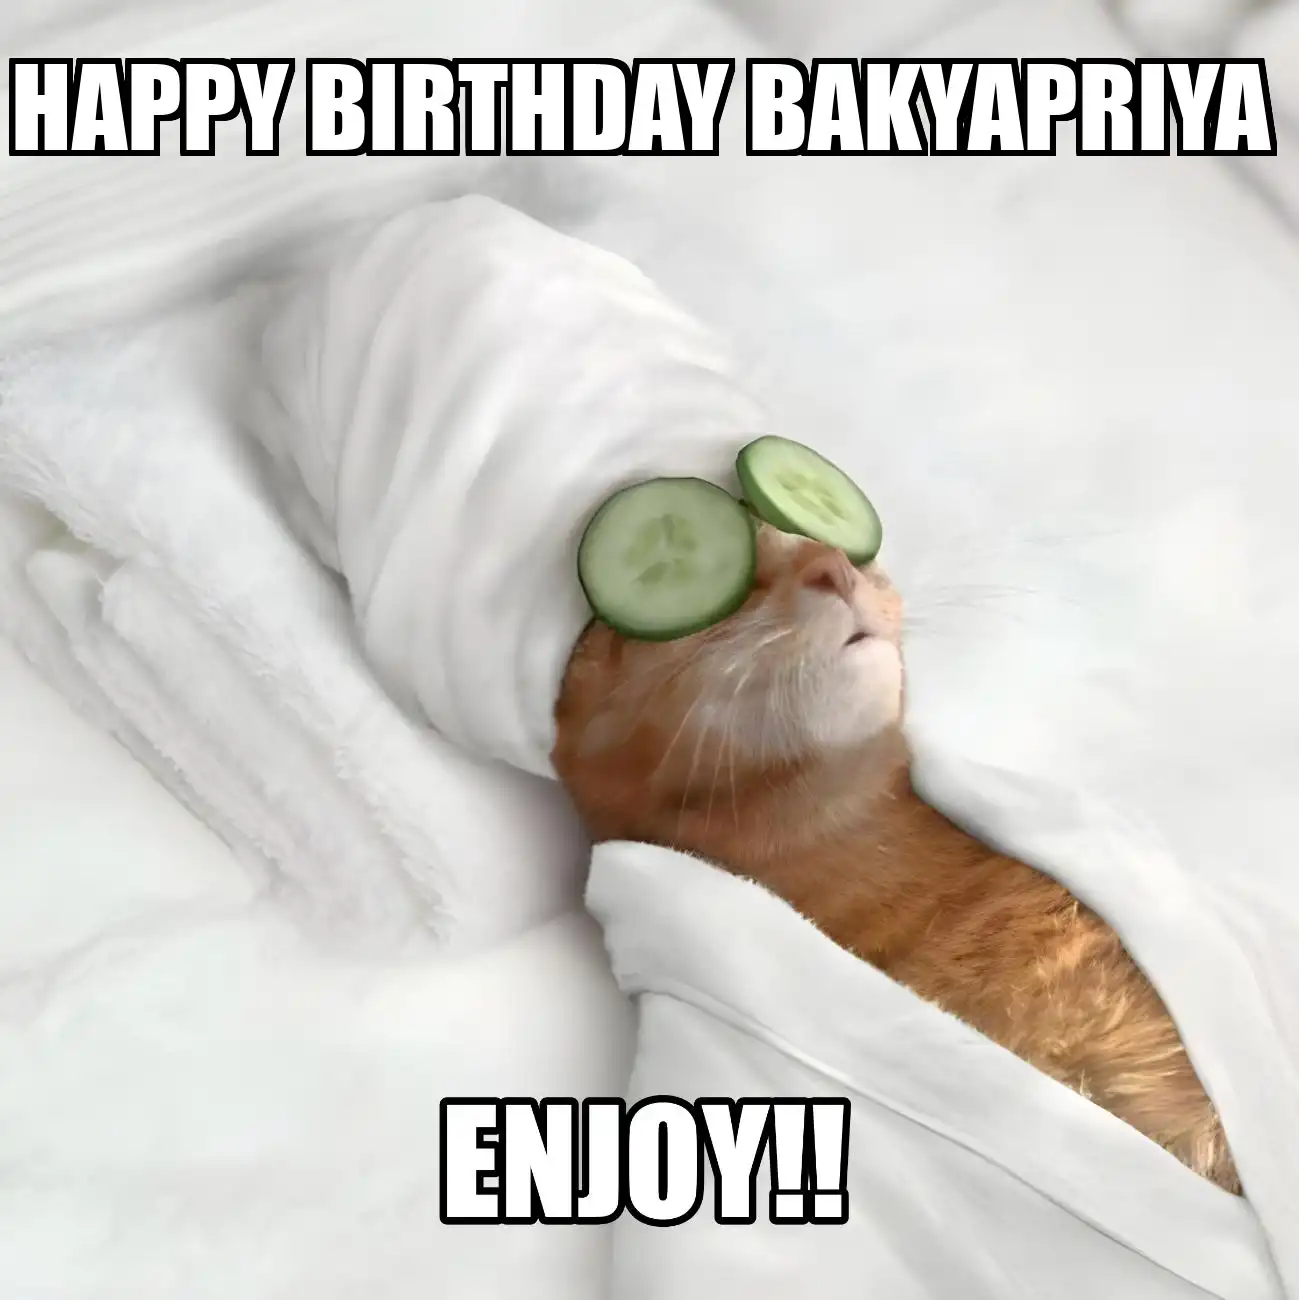 Happy Birthday Bakyapriya Enjoy Cat Meme